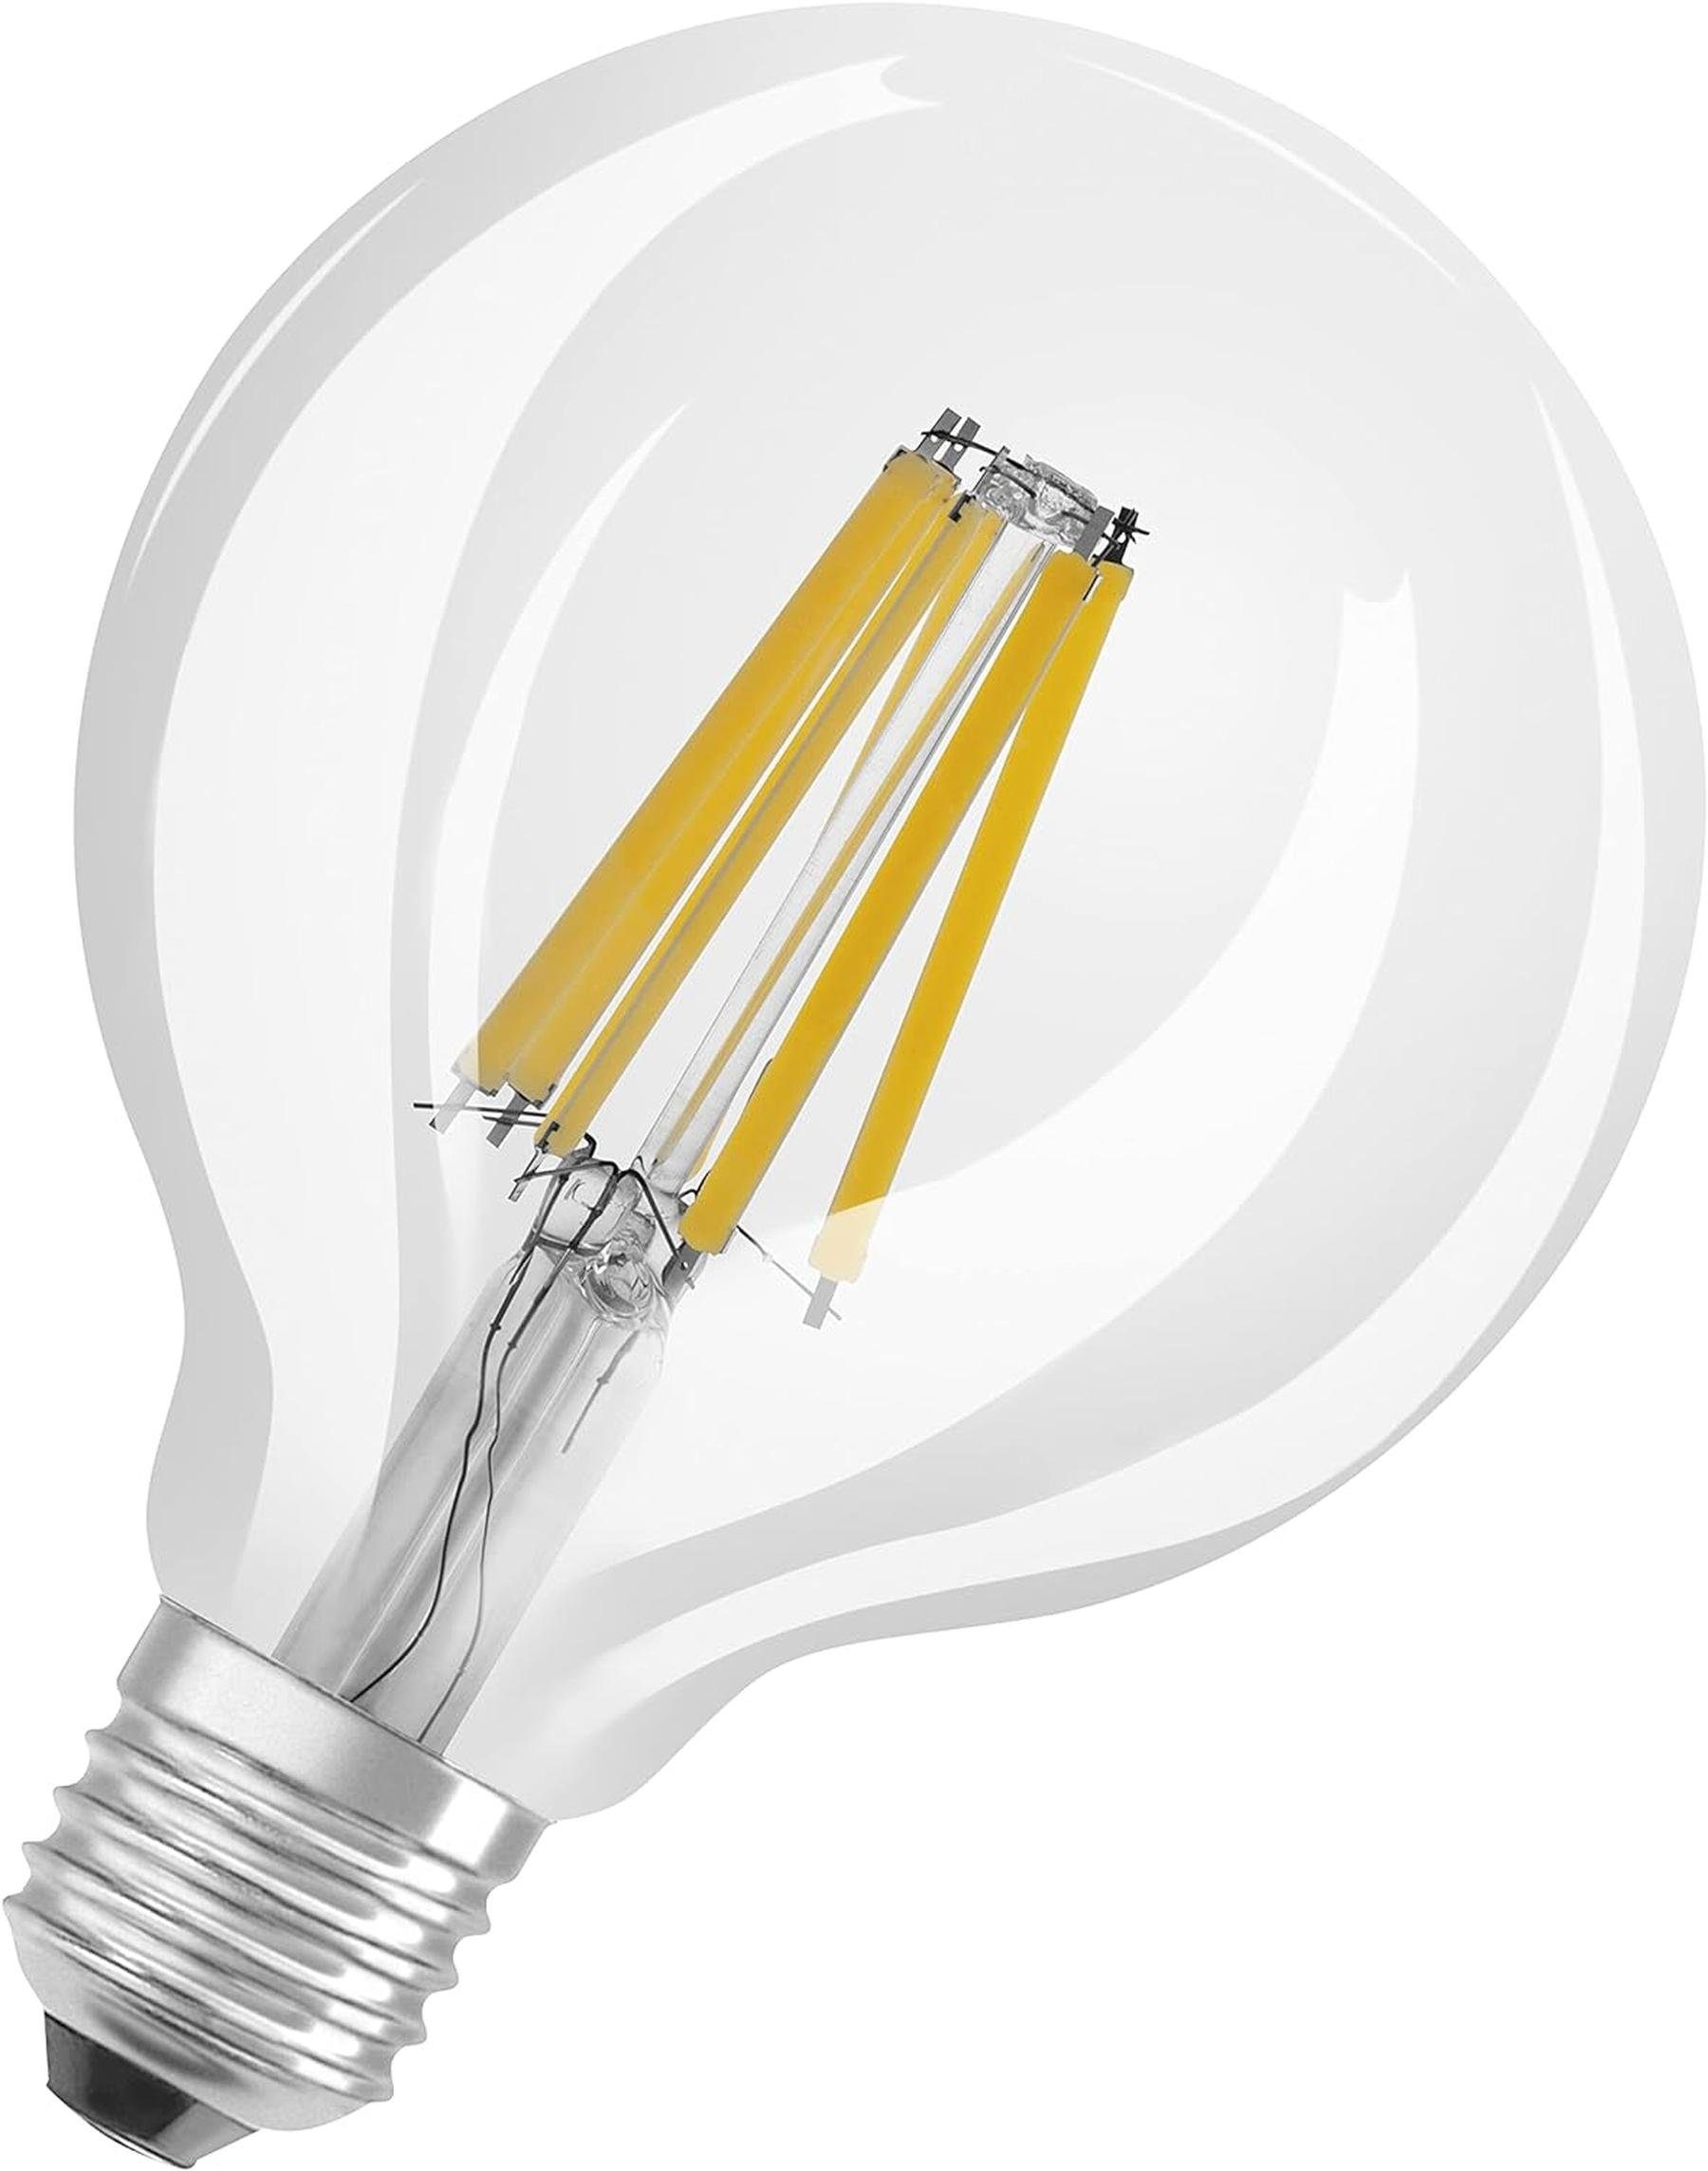 Osram LED-Leuchtmittel Osram-LED-Lampe-E27-dimmbar-kaltweiss, E27, Kaltweiß, 100W 1521 lm Leuchtmittel Lampe